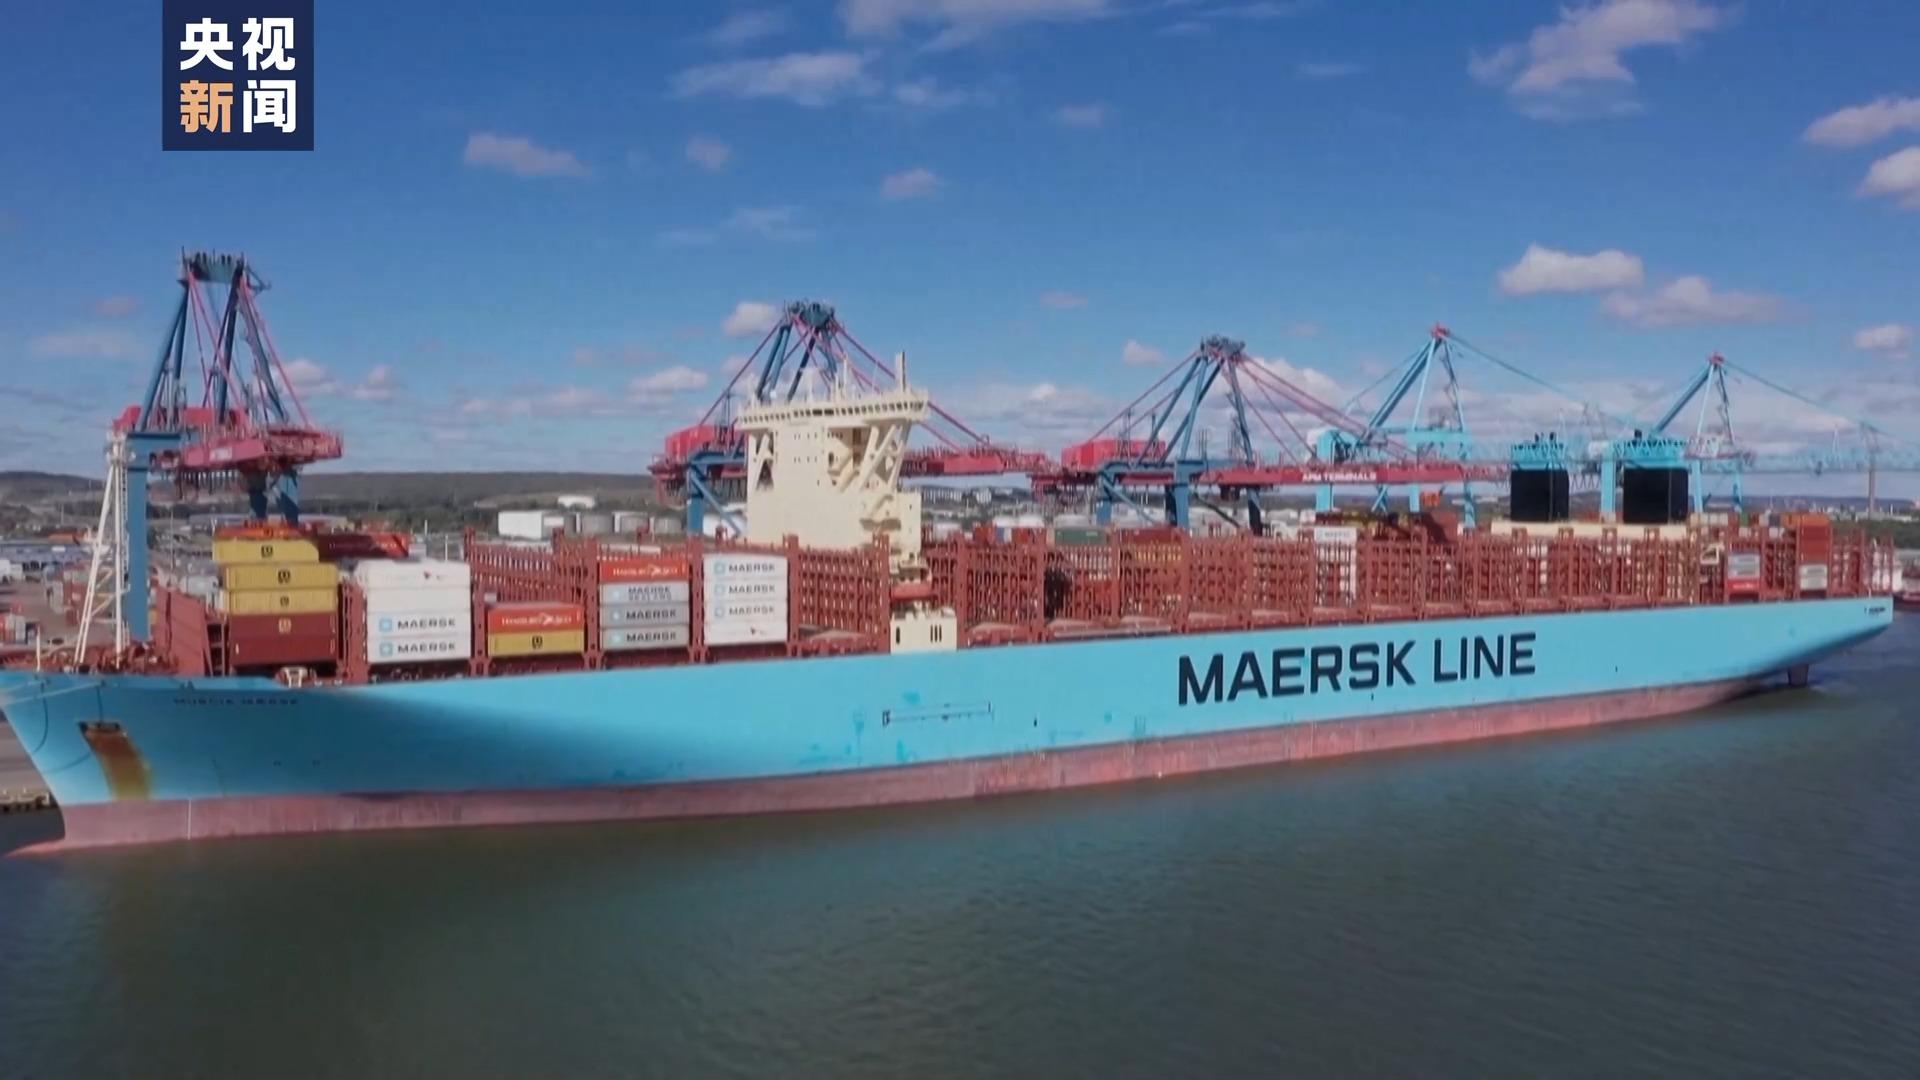 丹麦马士基航运集团:数十艘货轮将重返红海航线